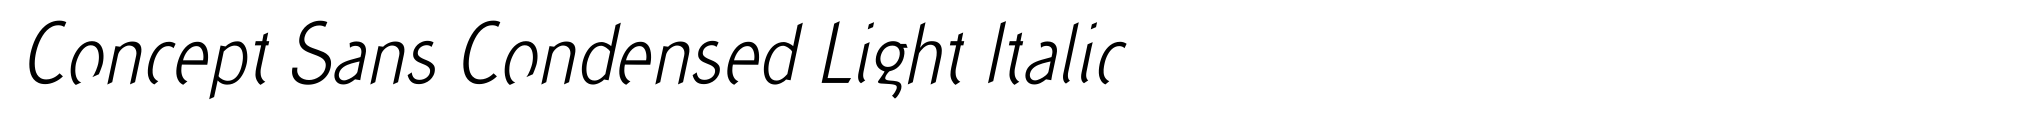 Concept Sans Condensed Light Italic image